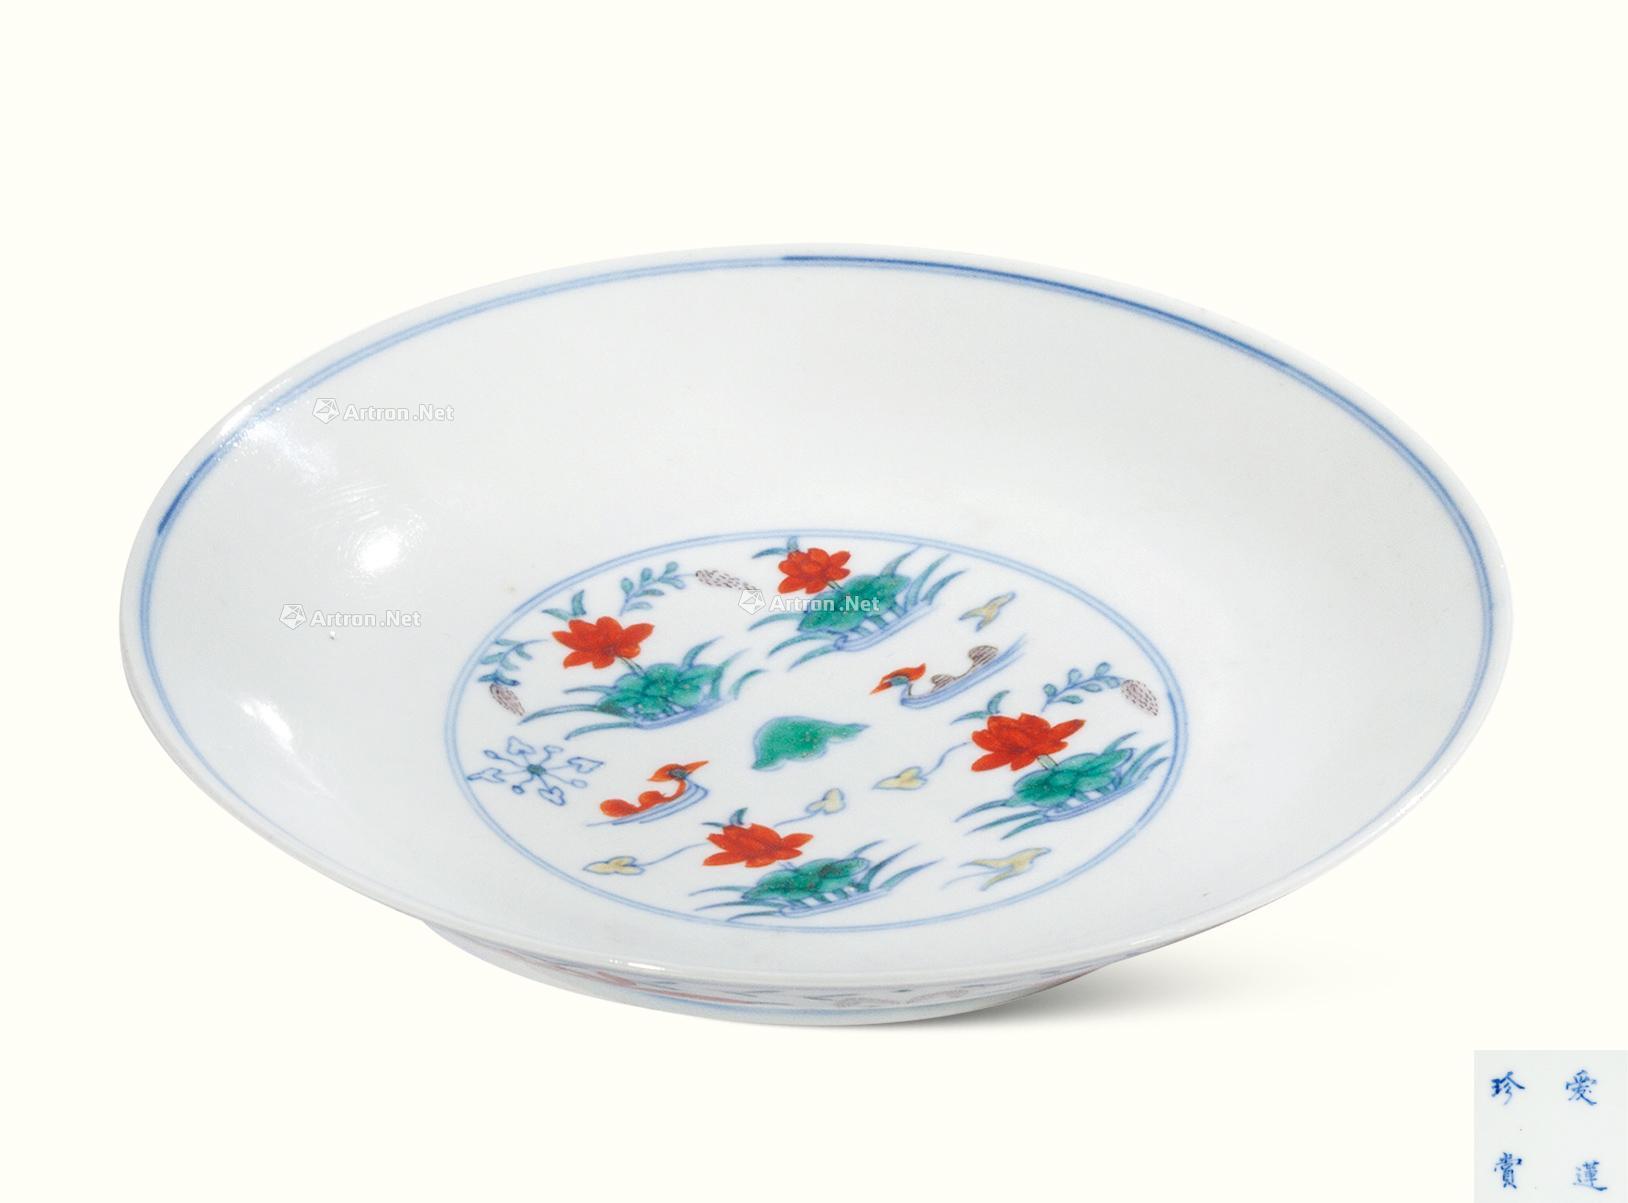 Qing daoguang Bucket lianchi yuanyang tray